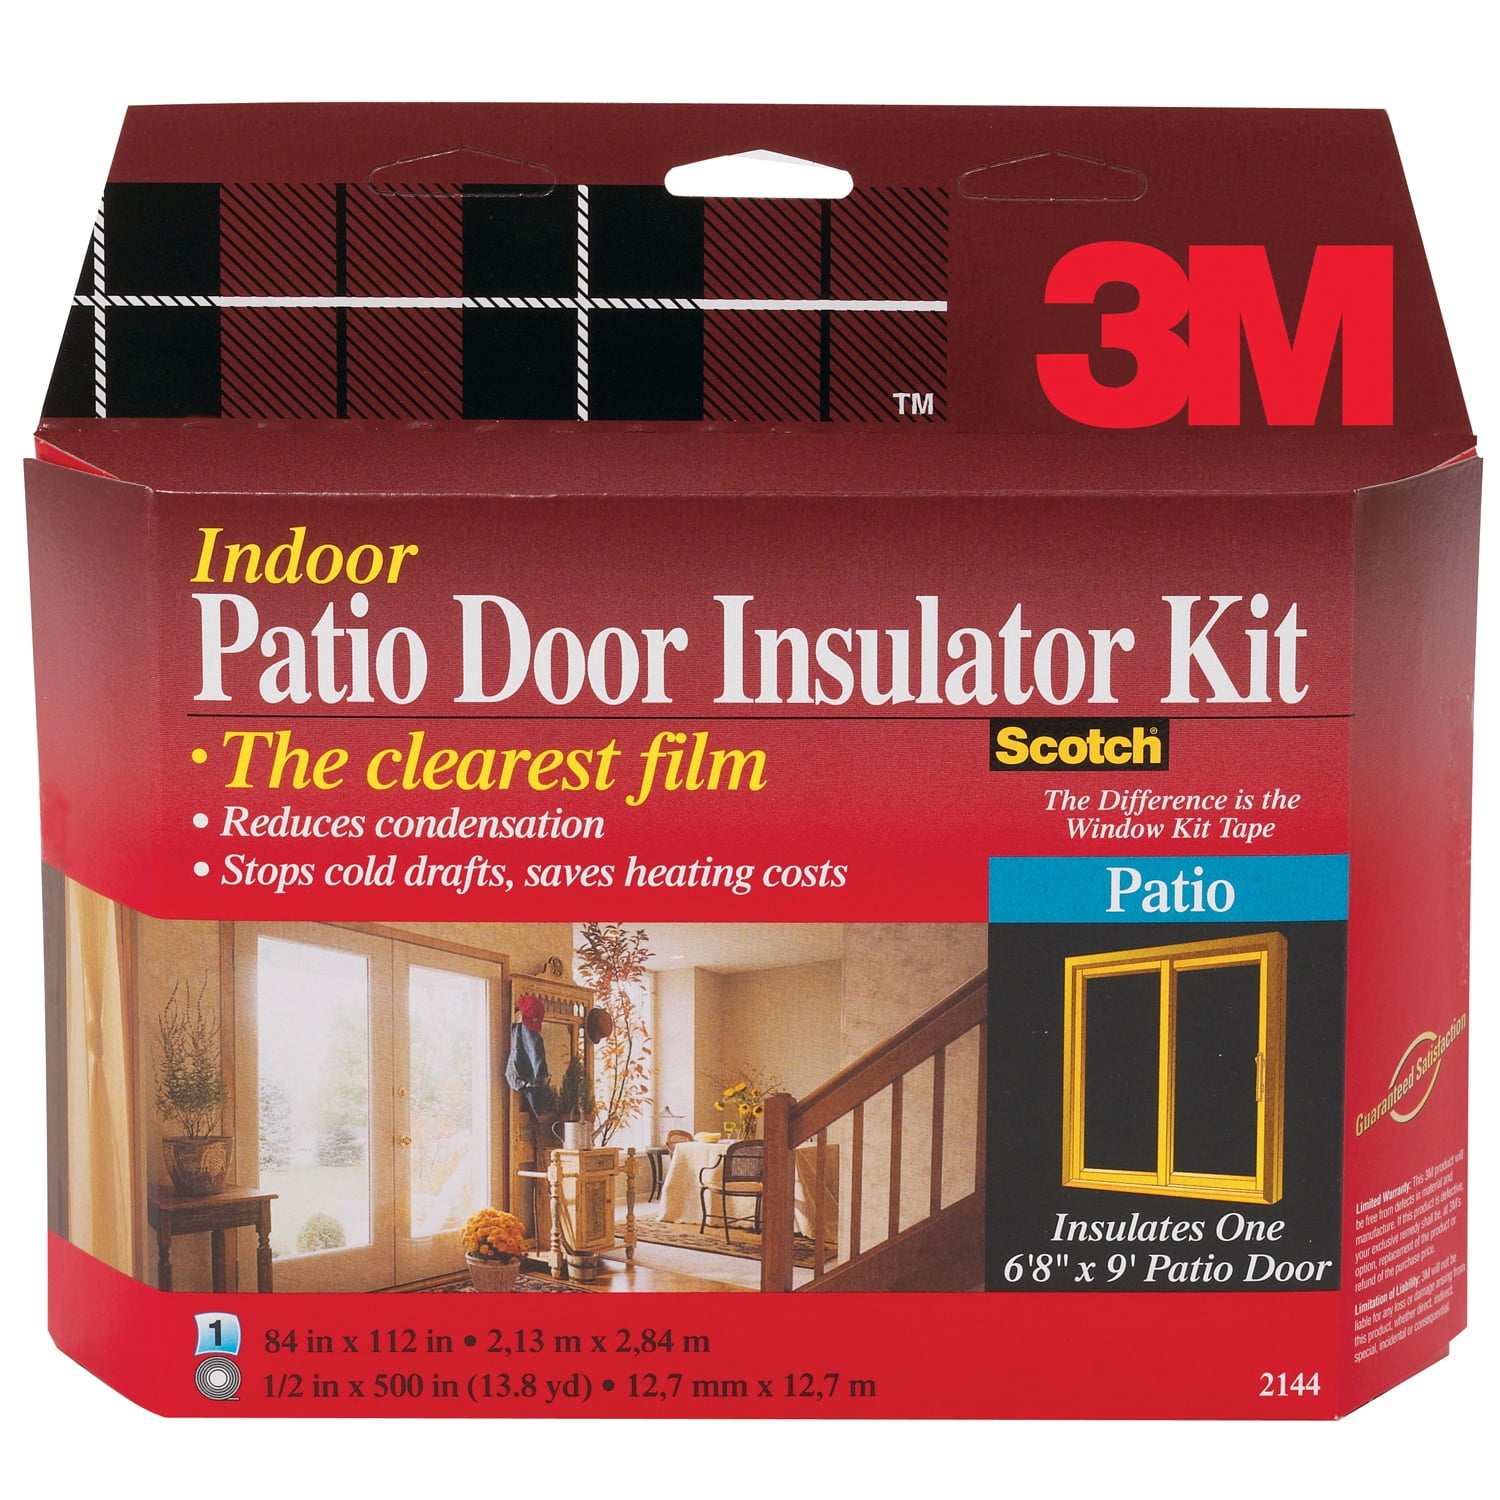 3M Window Insulator Kit Scotch Patio Door & XL Window